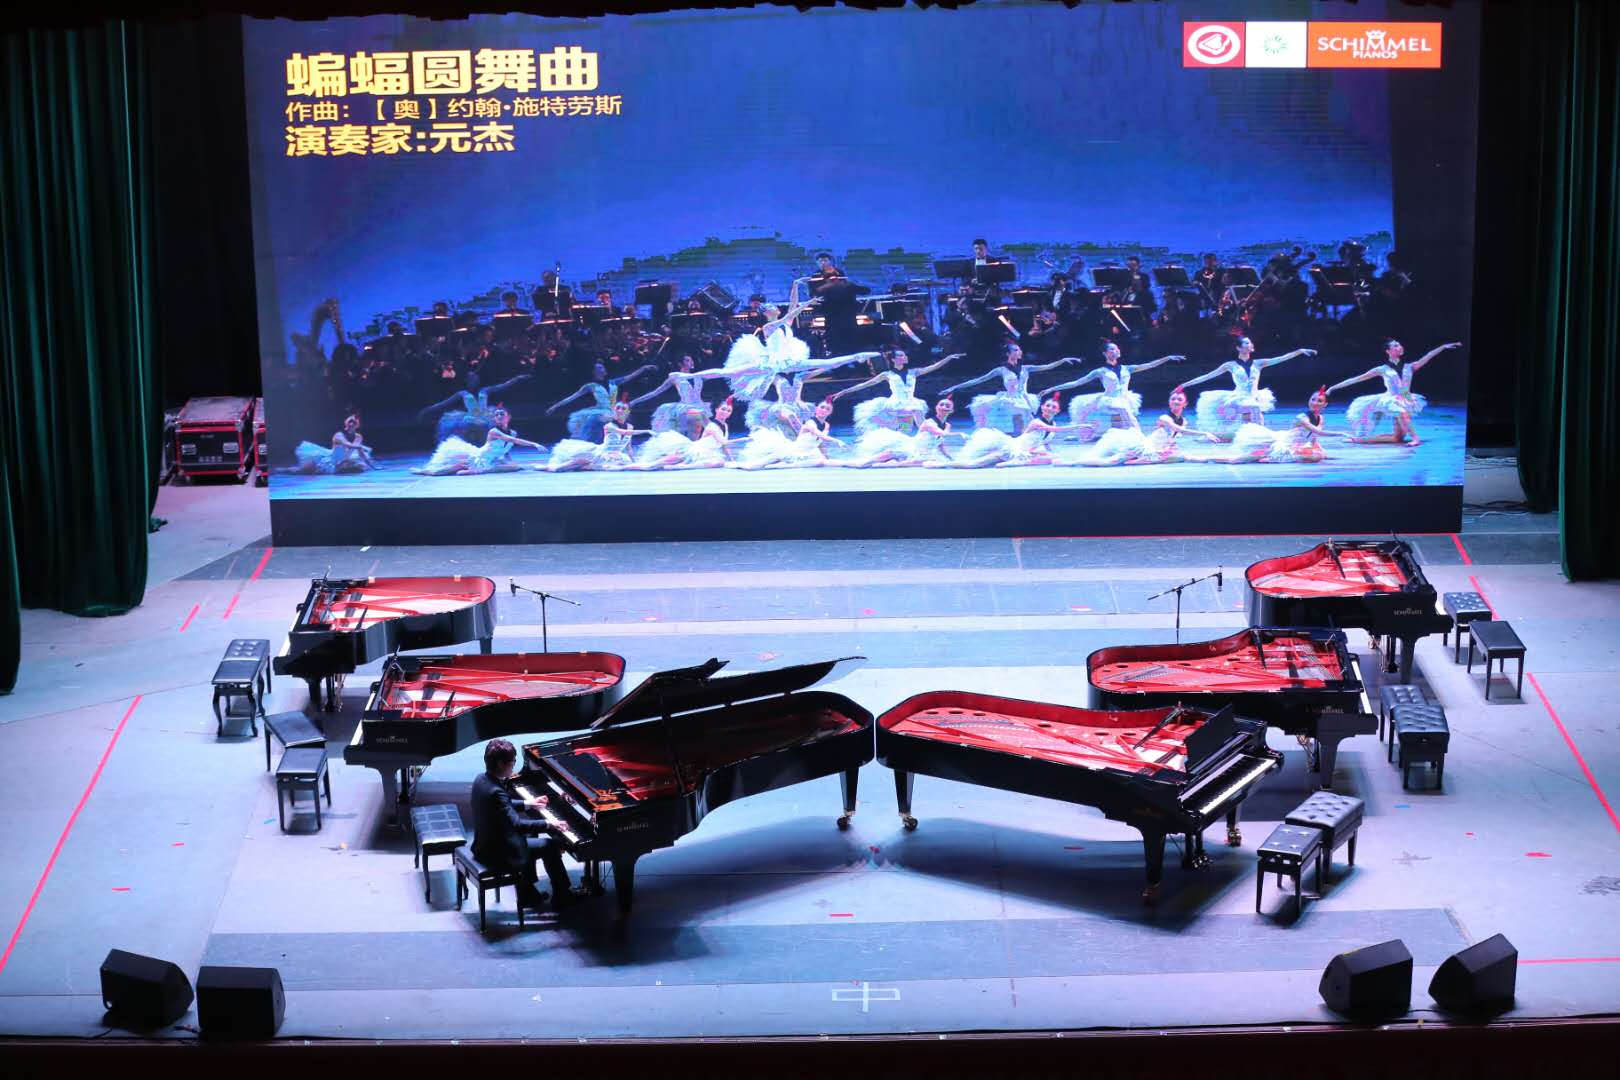 星耀岛城——SCHIMMEL钢琴之夜，钢琴家元杰携手百位钢琴名师同台献演新年音乐会